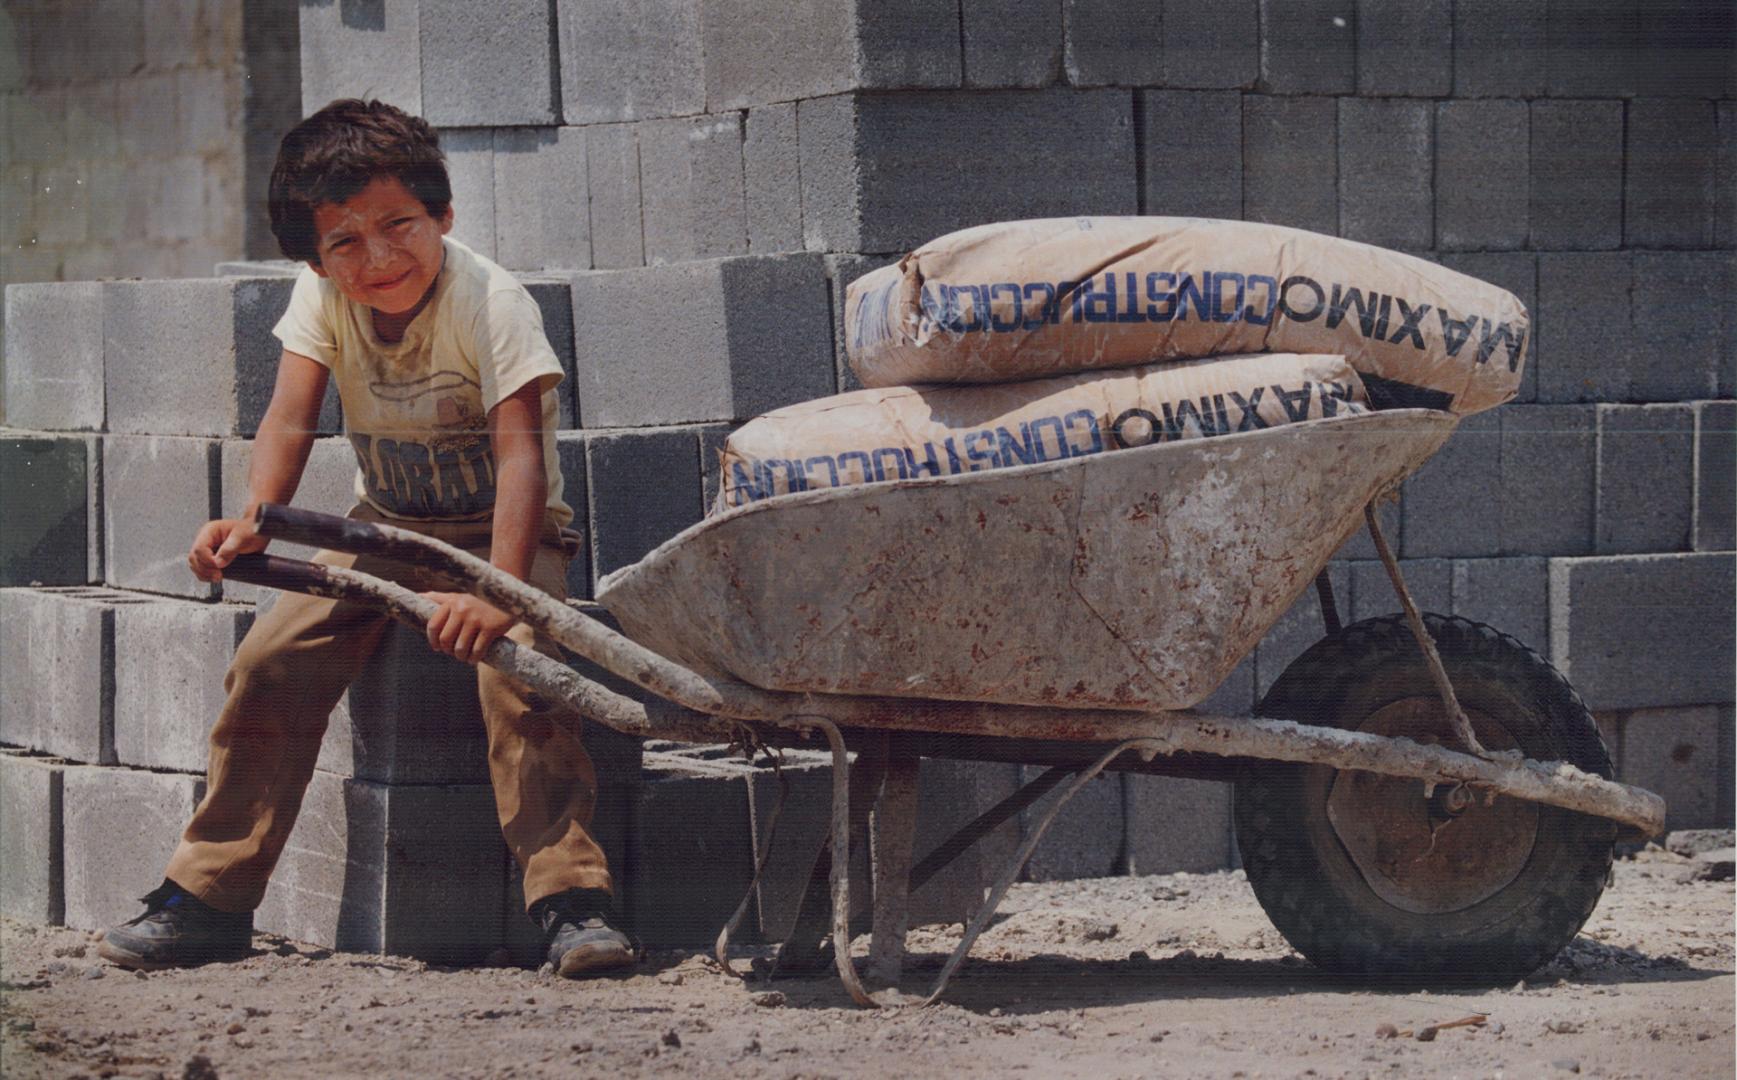 Construction worker Luis Sanchez, 6